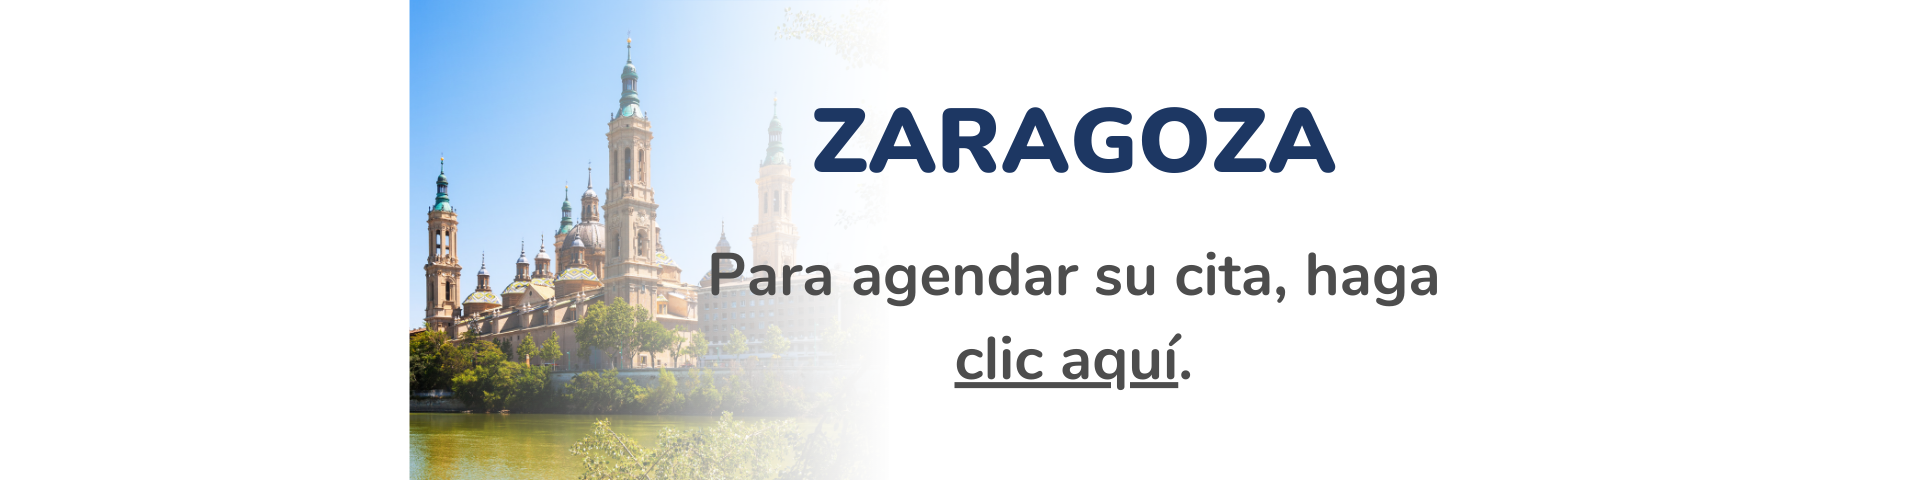 Consulado Móvil en Zaragoza 